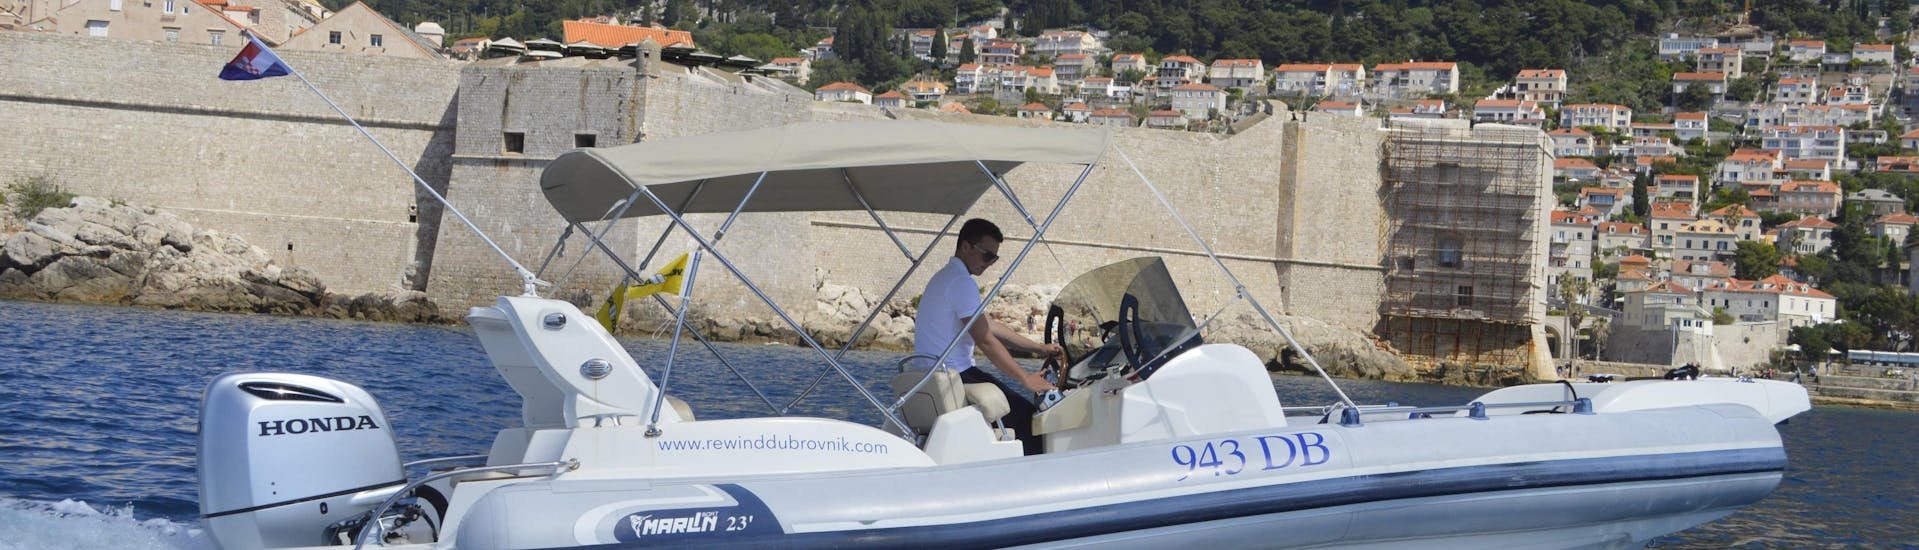 Paseo en barco privado de Dubrovnik a Korčula con baño en el mar & avistamiento de fauna.